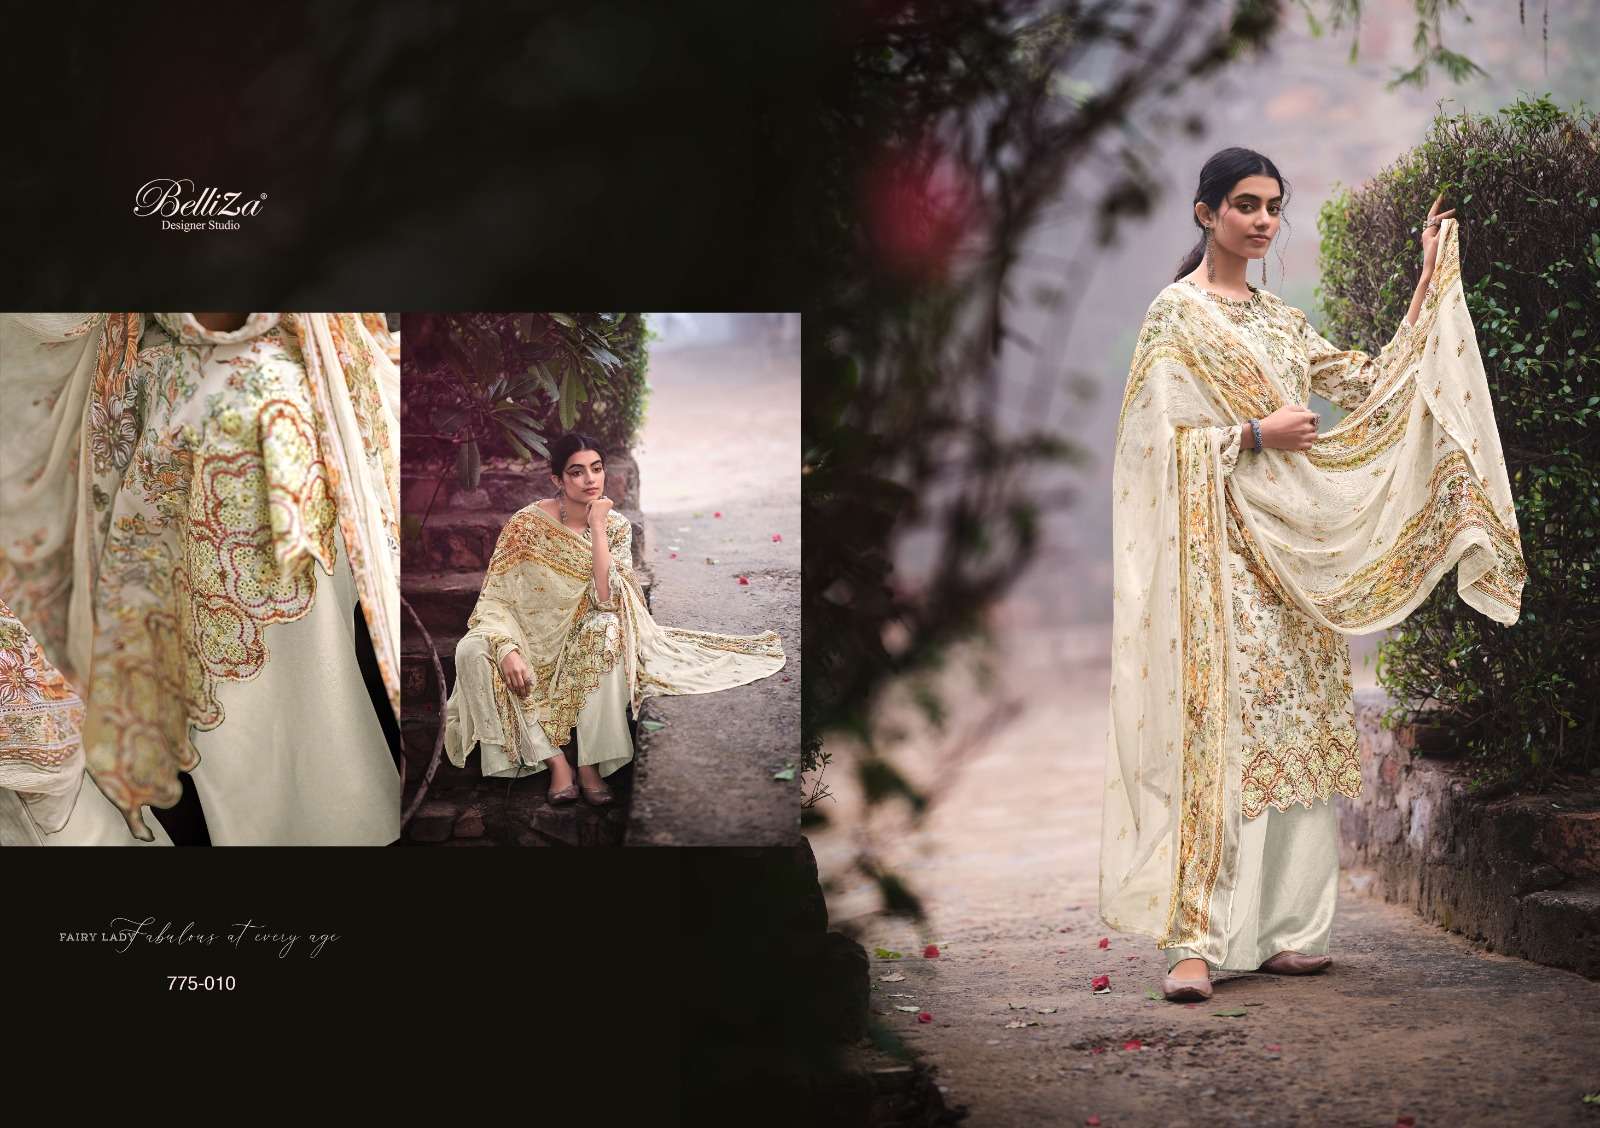 belliza designer studio seerat vol-2 jam cotton designer salwar kameez catalogue online market surat 